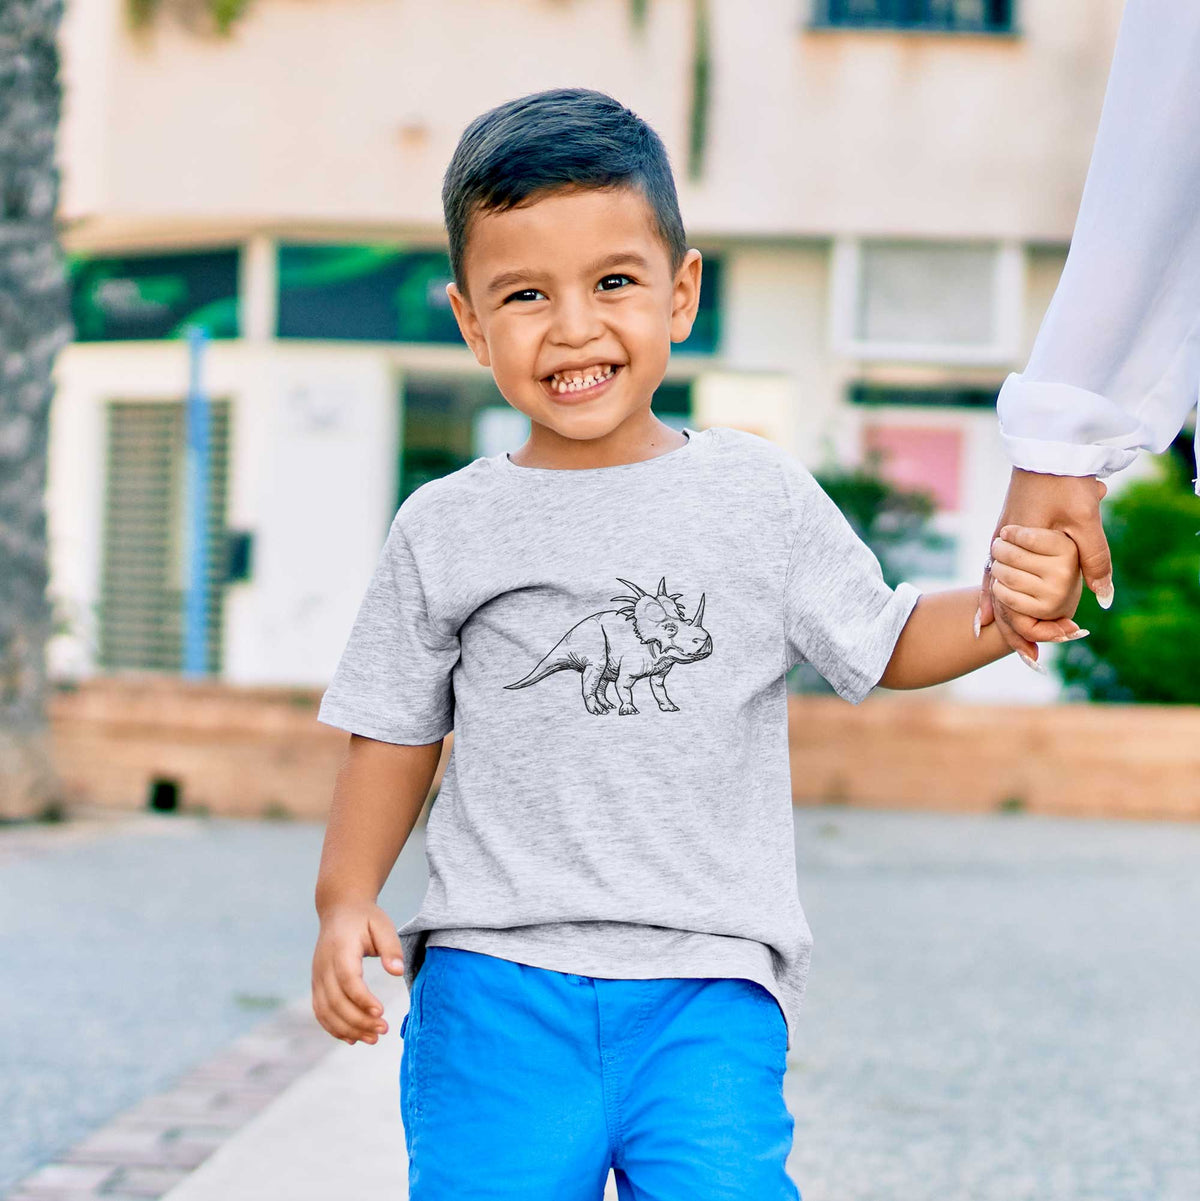 Styracosaurus Albertensis - Kids Shirt